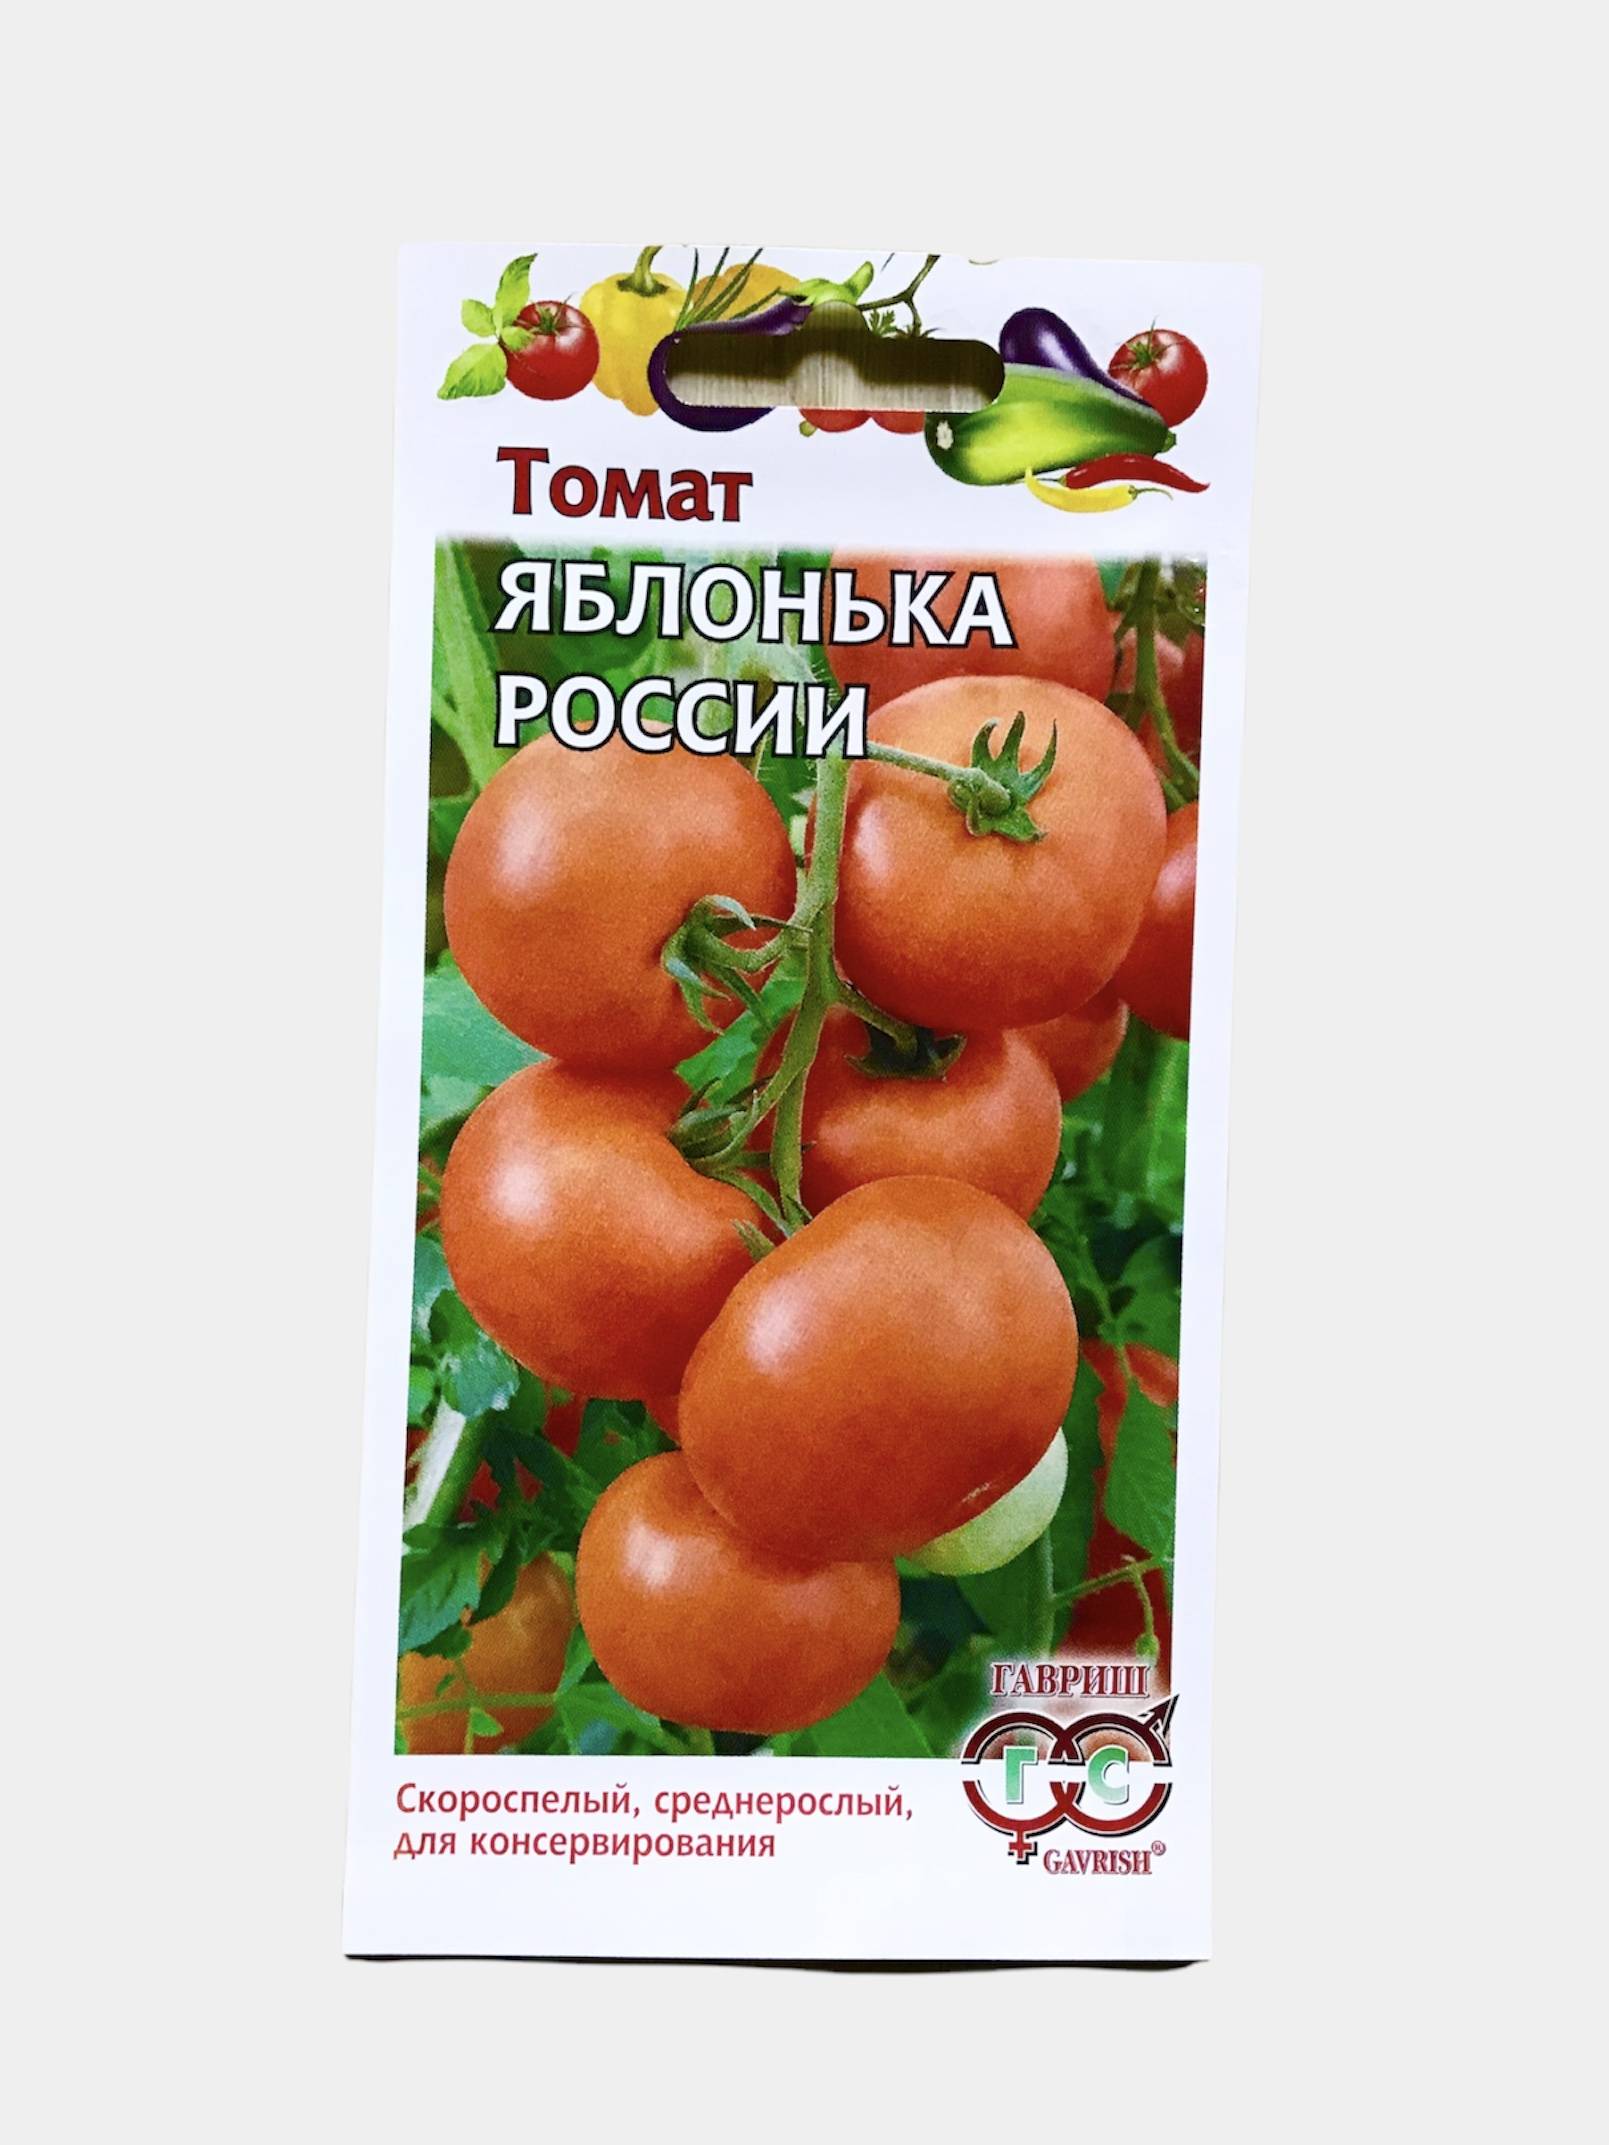 сорт томата яблонька россии отзывы фото